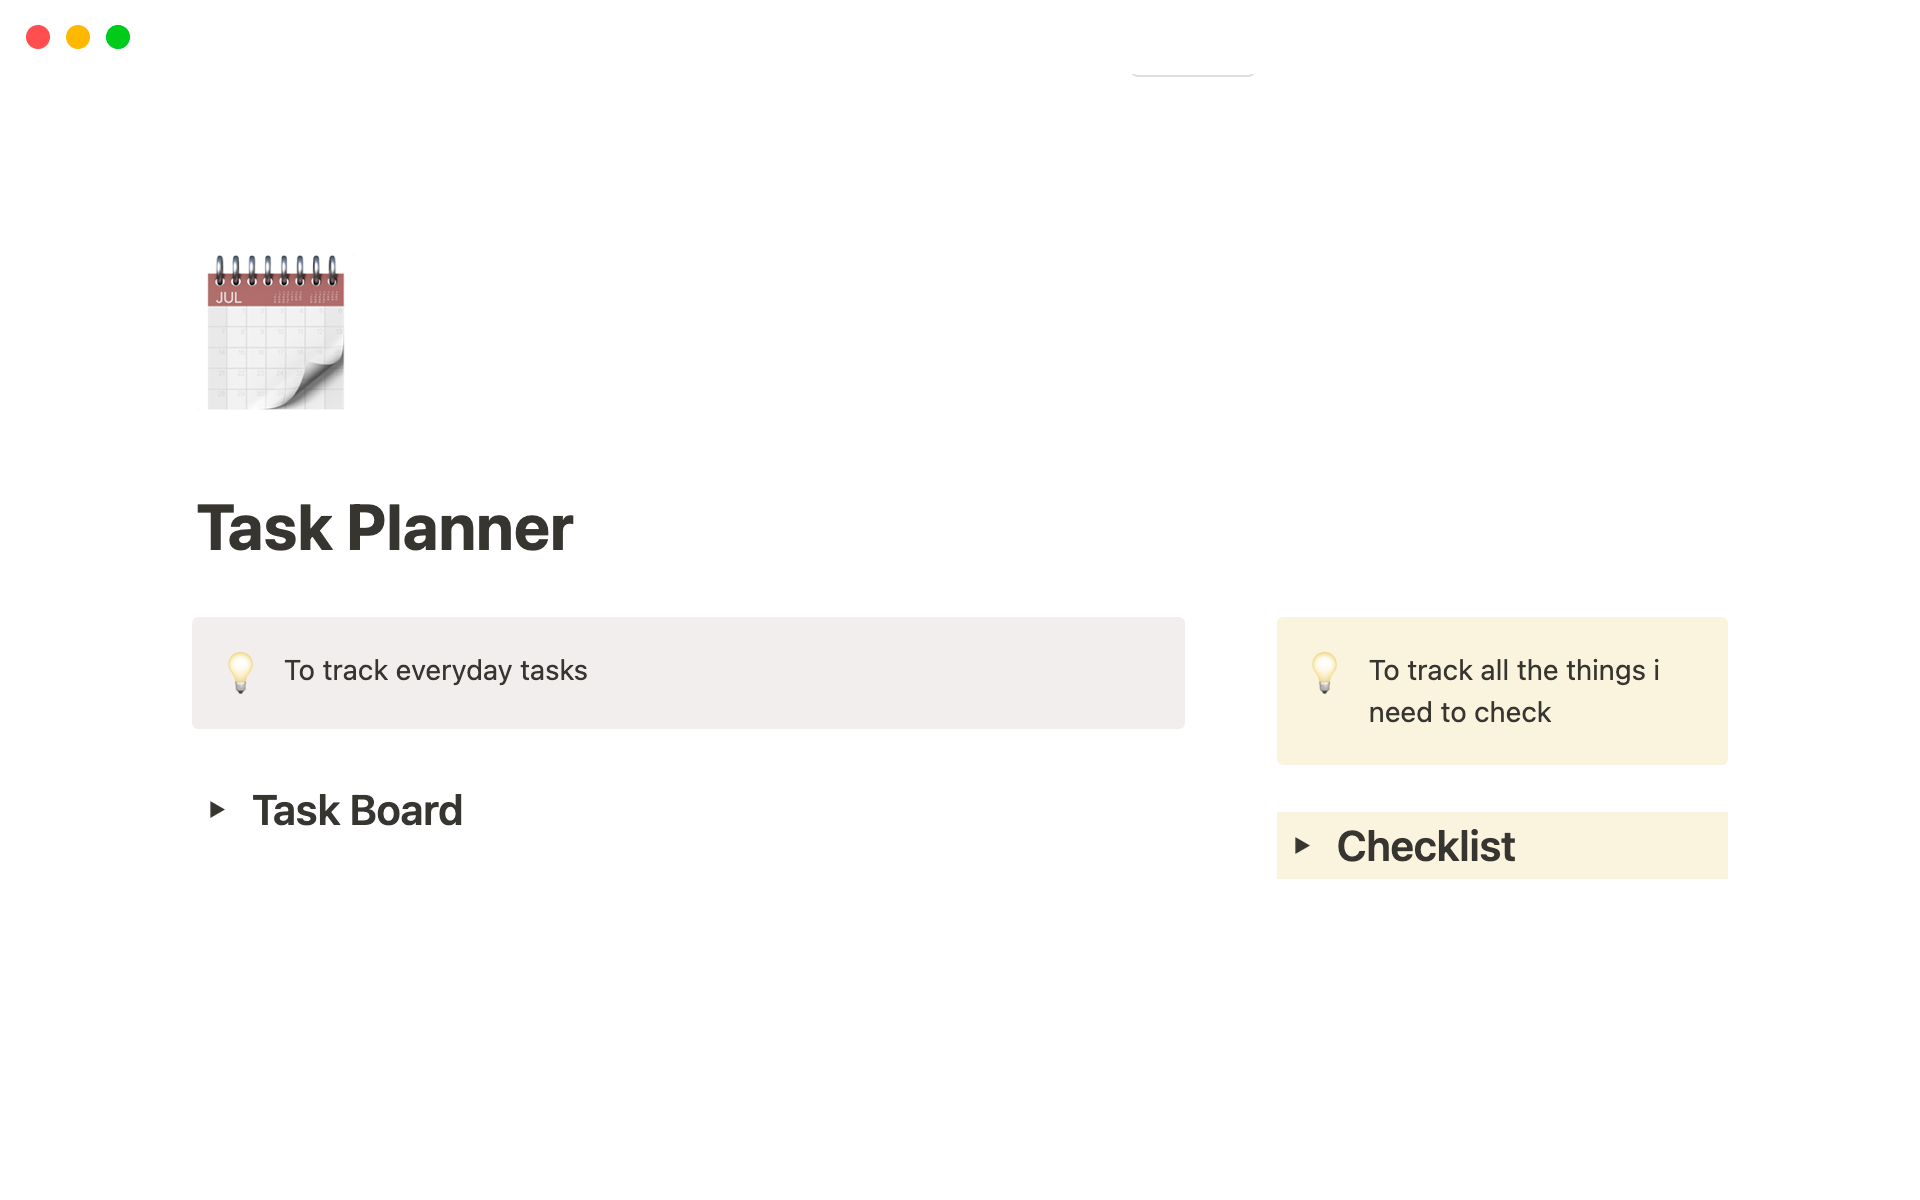 Uma prévia do modelo para Task Planner